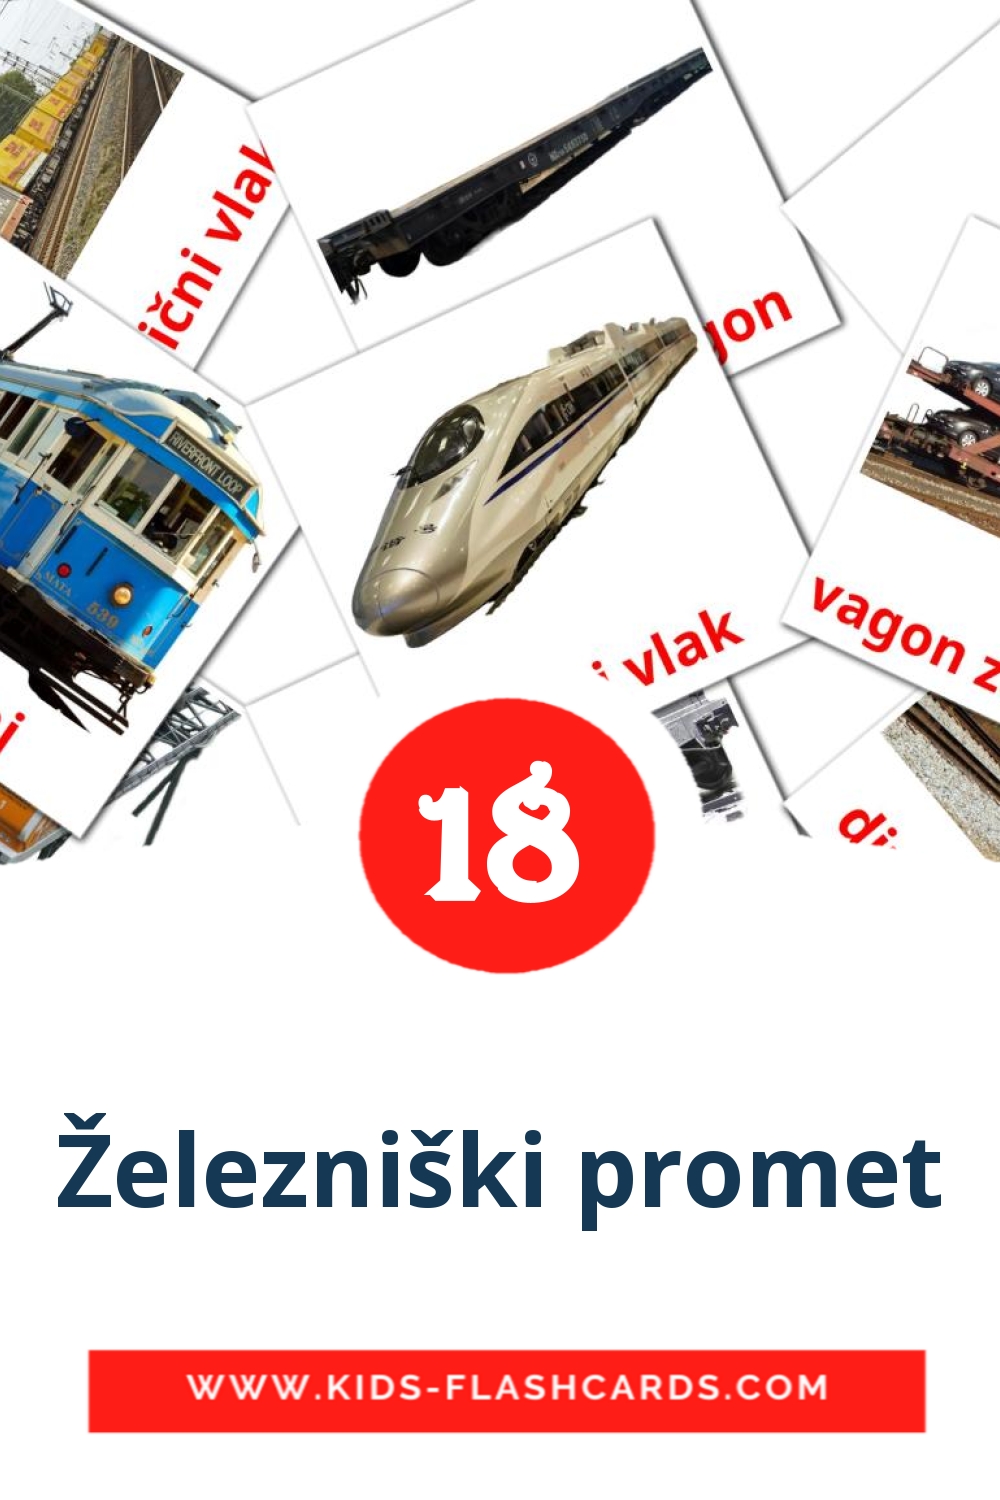 18 Železniški promet Picture Cards for Kindergarden in slovenian